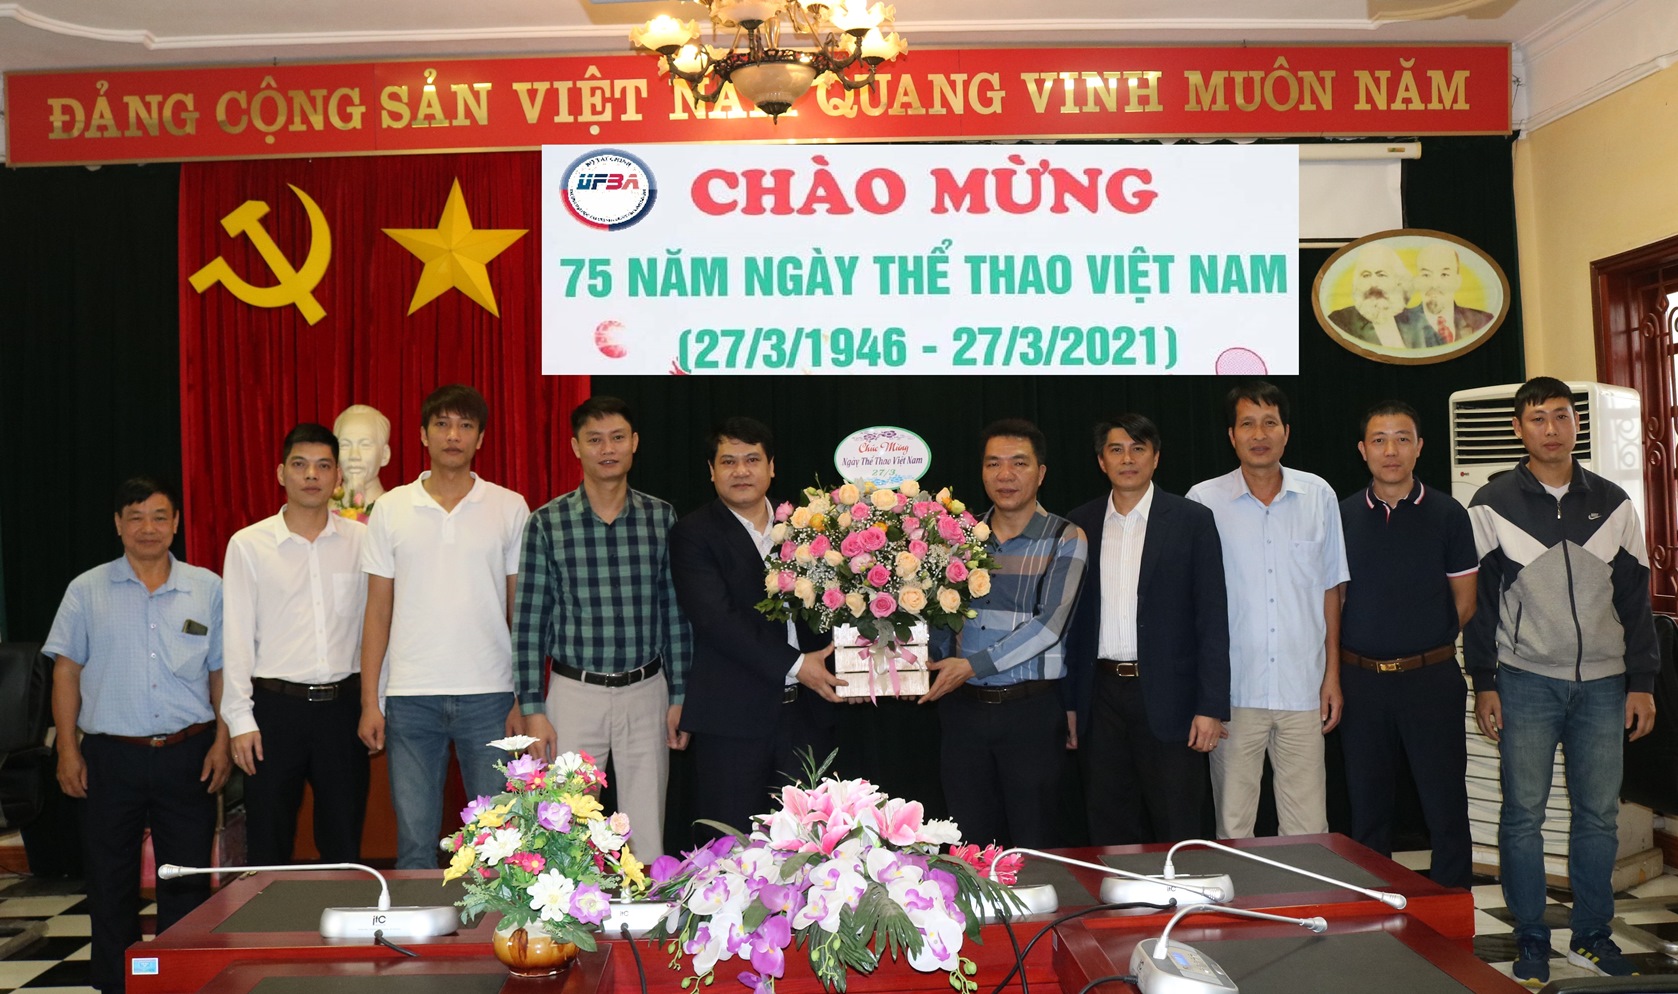 Lãnh đạo Nhà trường chúc mừng Ngày Thể thao Việt Nam 27/3/2021